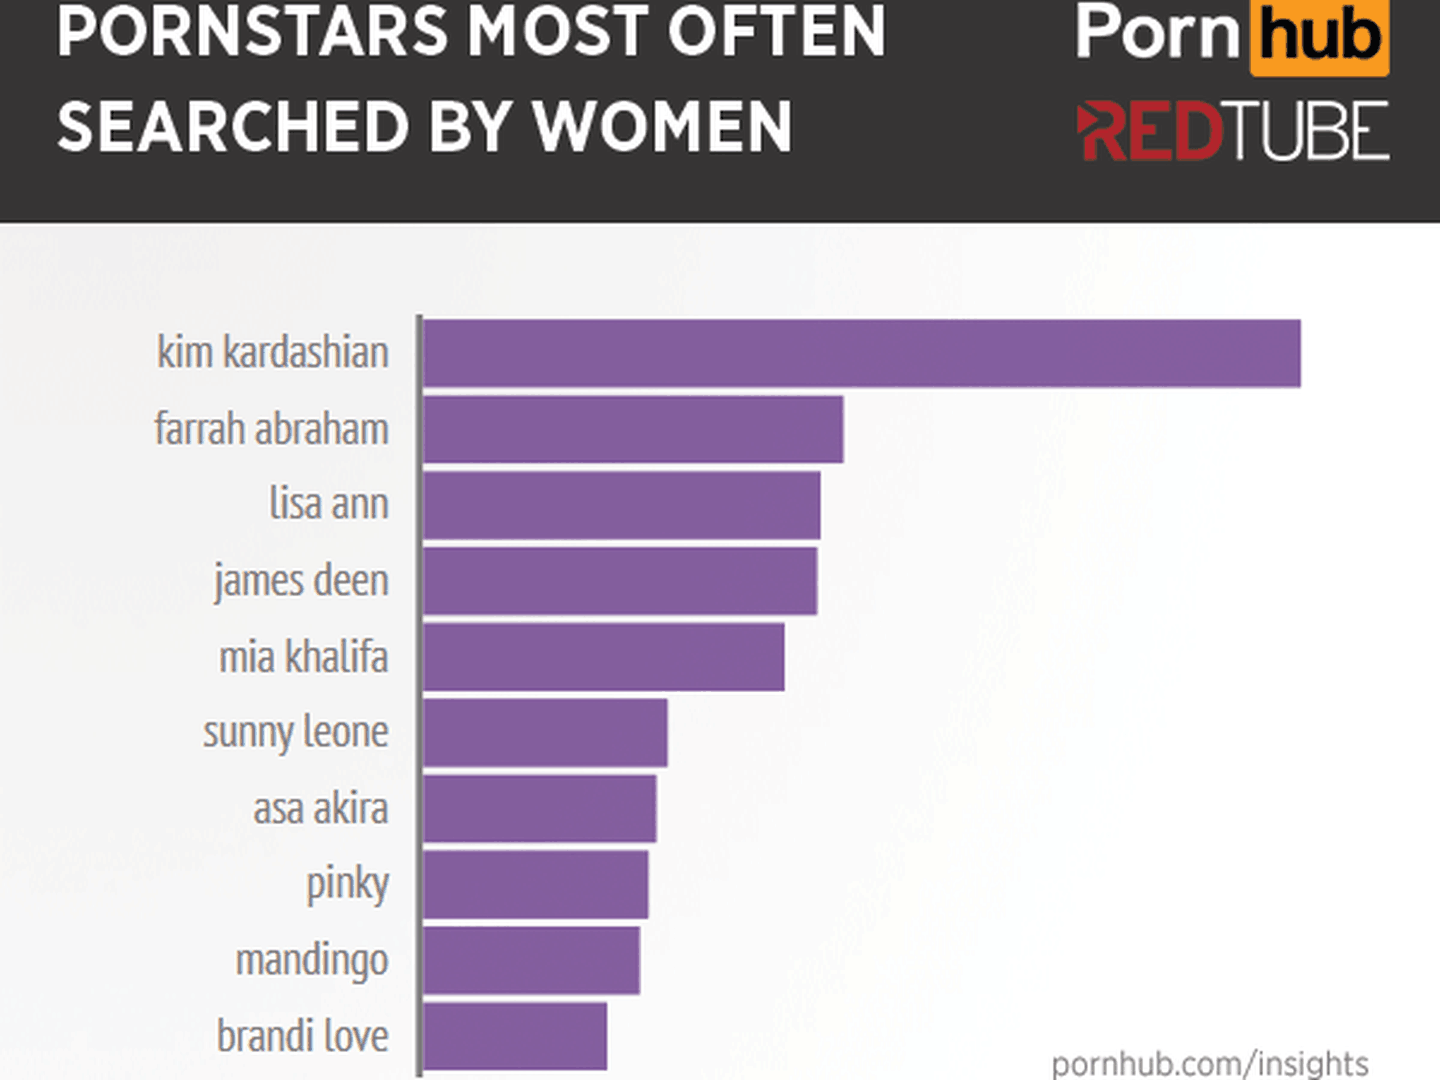 Las estrellas porno más buscadas por las mujeres.